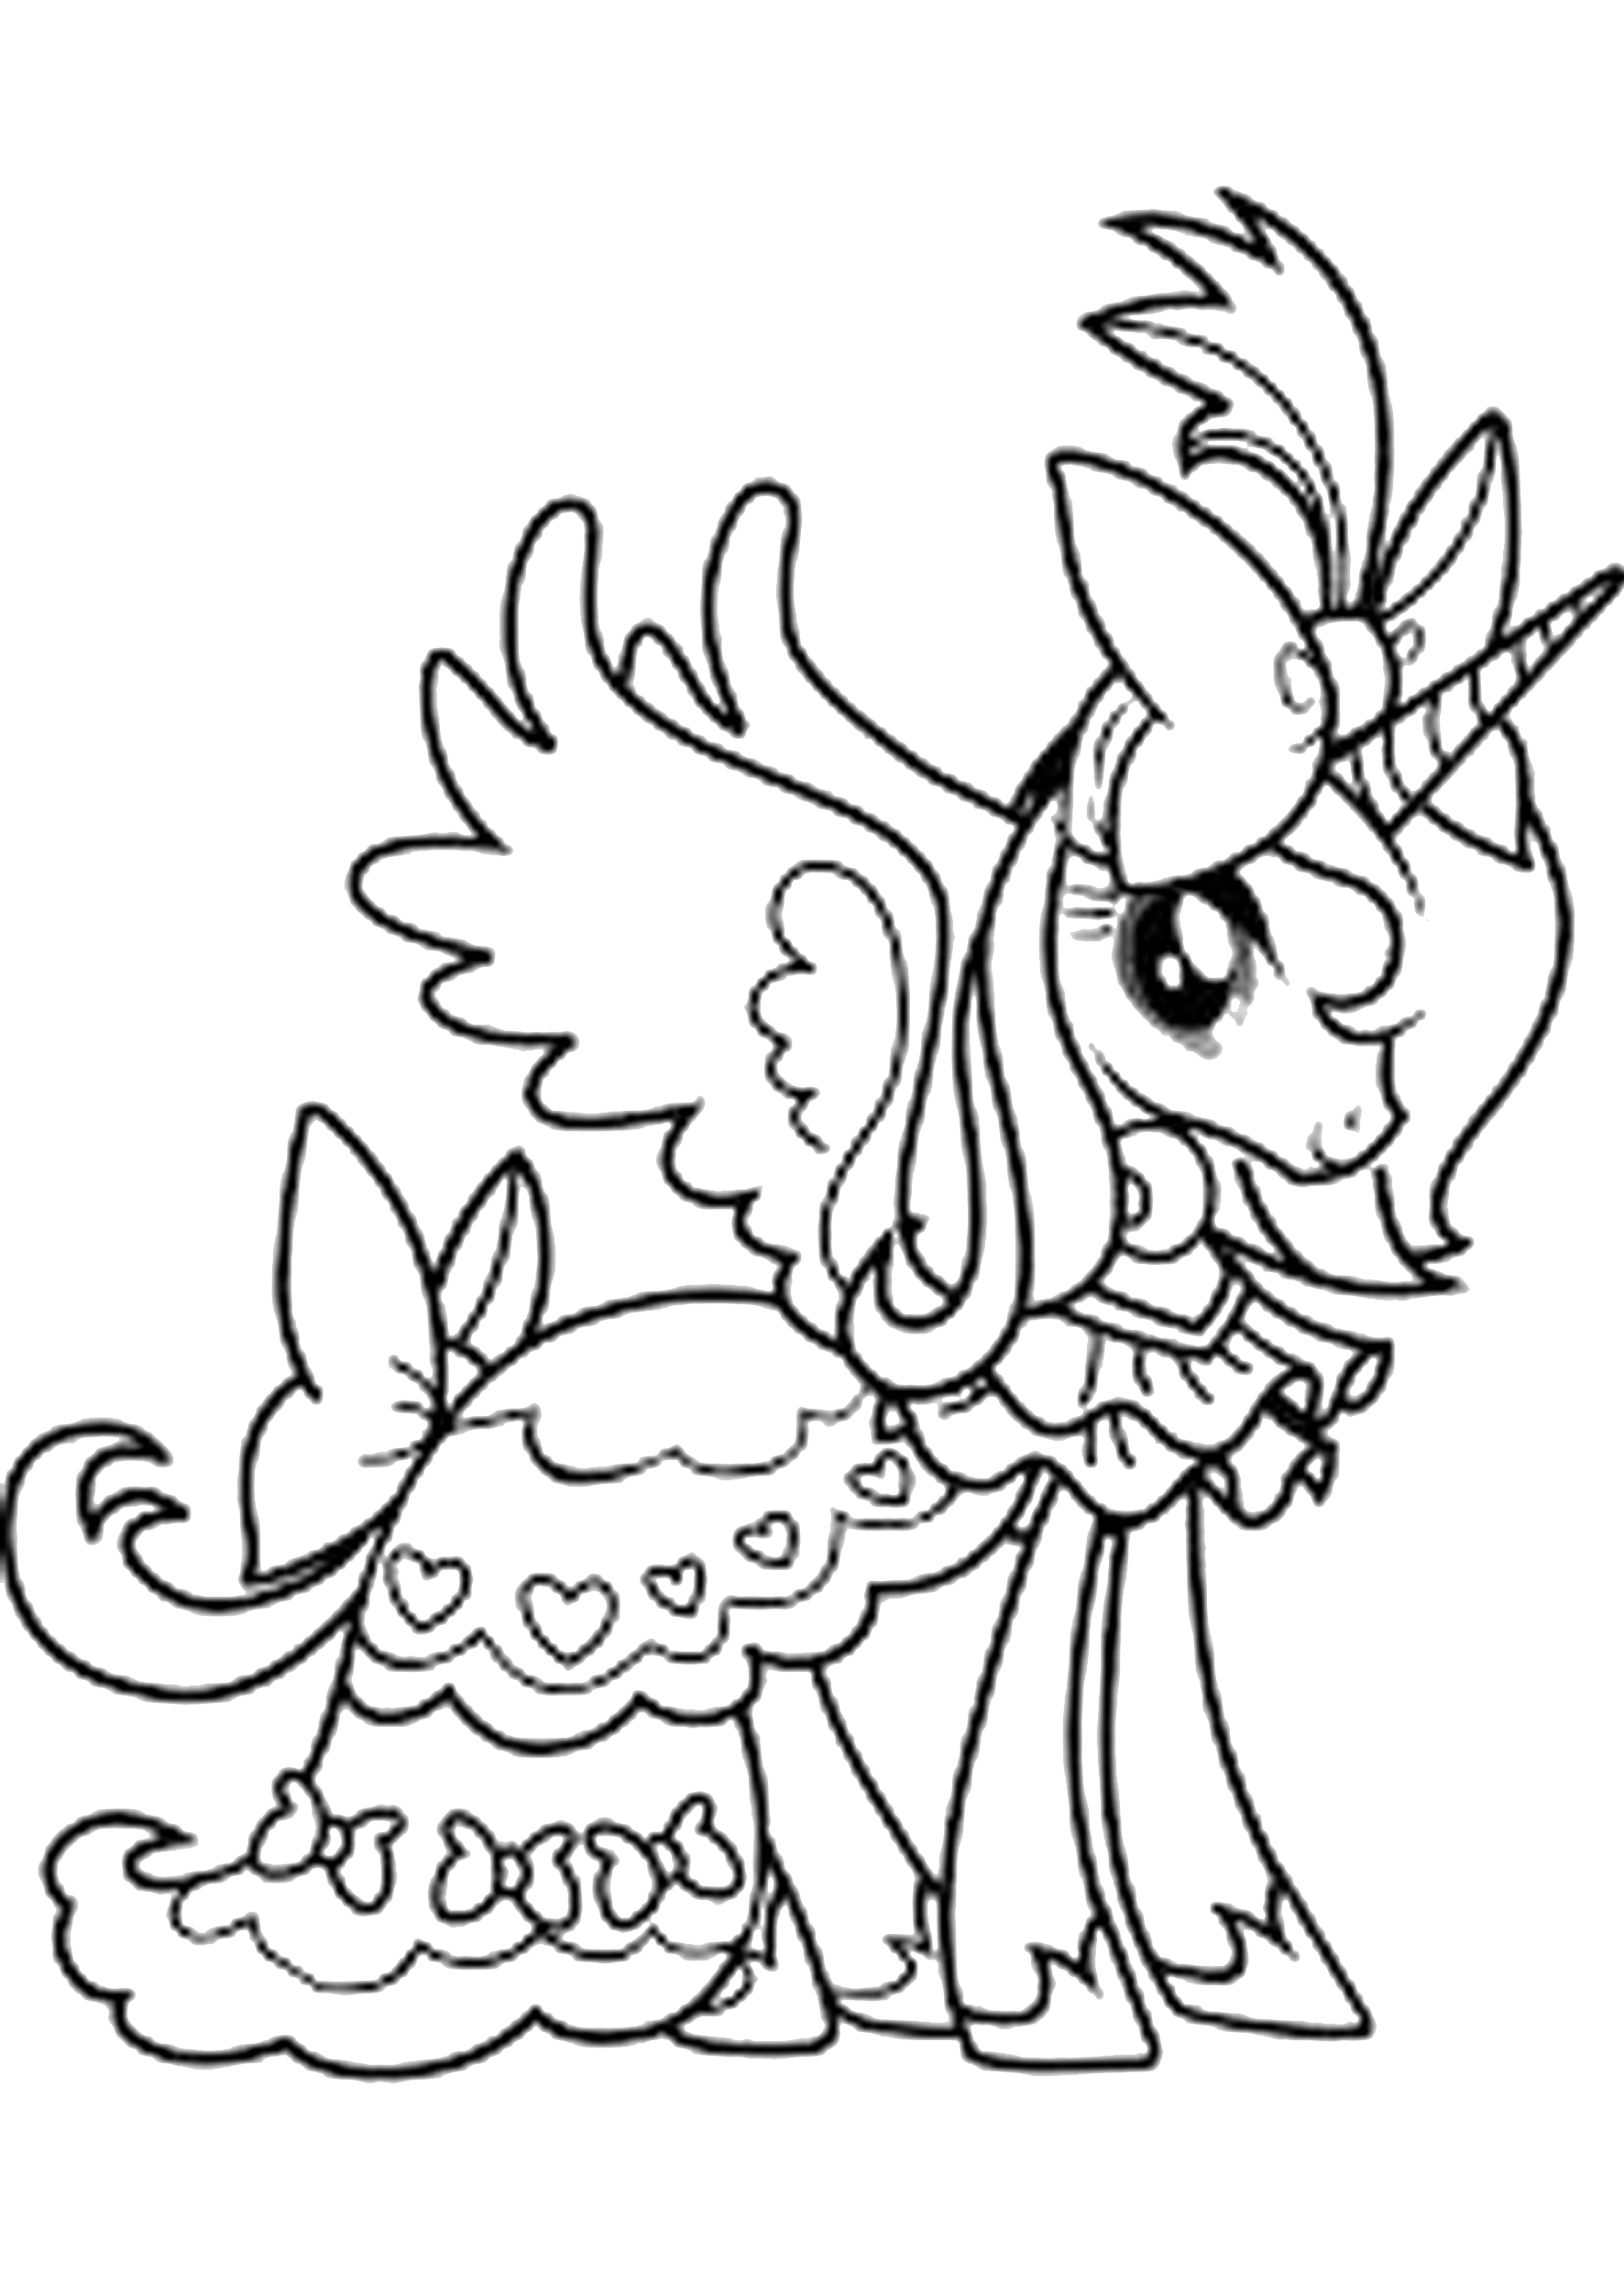 Tranh tô màu ngựa Pony | Ngựa pony, Công chúa luna, Công chúa celestia